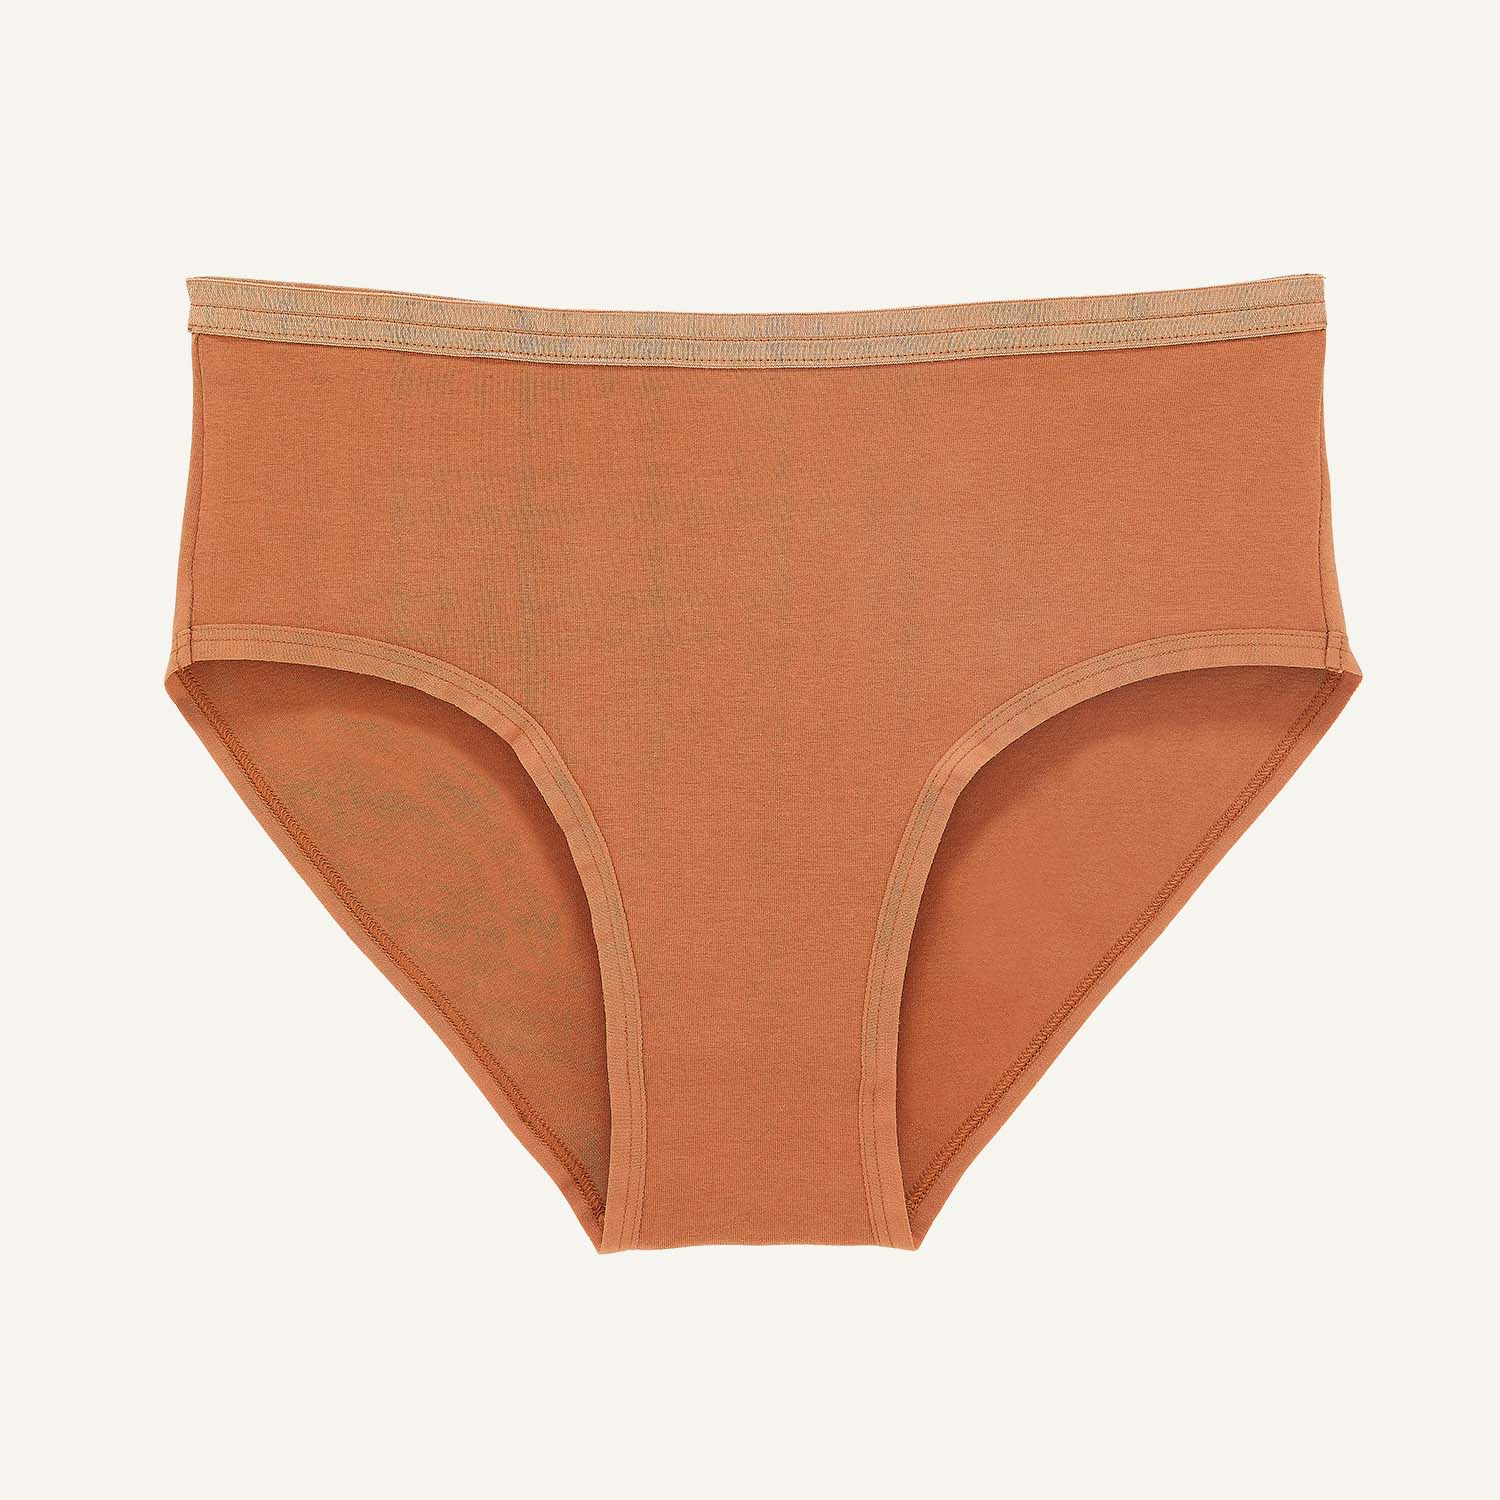 Women's organic cotton underwear for medium brown skin tones.